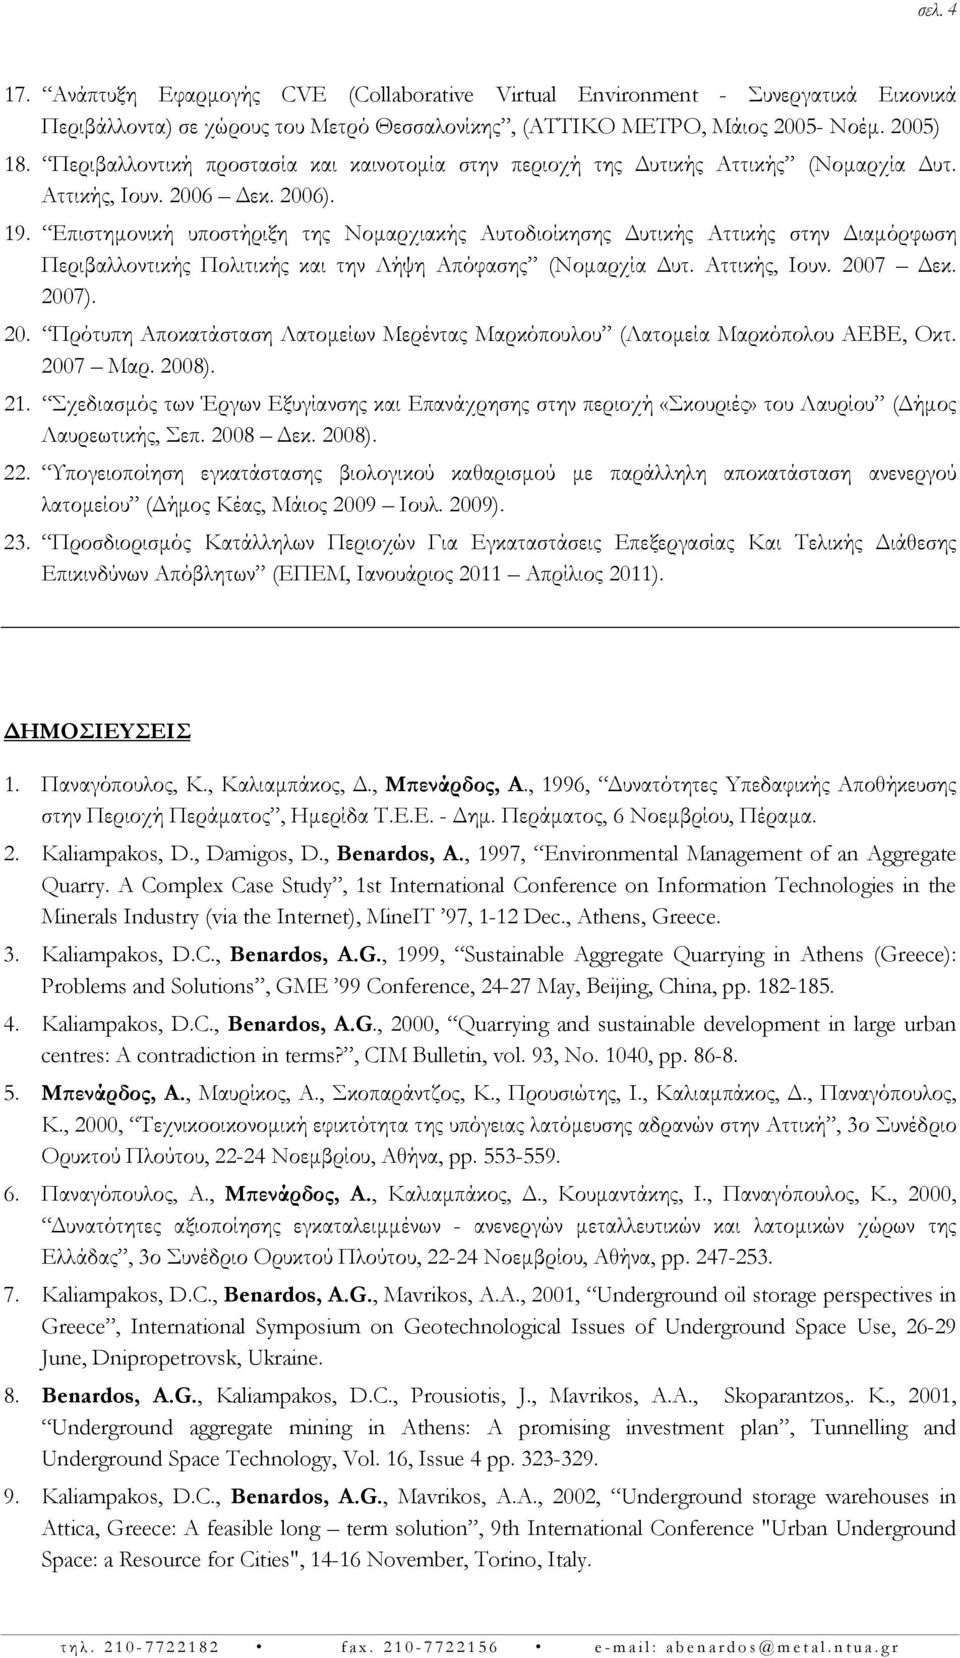 Επιστημονική υποστήριξη της Νομαρχιακής Αυτοδιοίκησης Δυτικής Αττικής στην Διαμόρφωση Περιβαλλοντικής Πολιτικής και την Λήψη Απόφασης (Νομαρχία Δυτ. Αττικής, Ιουν. 200